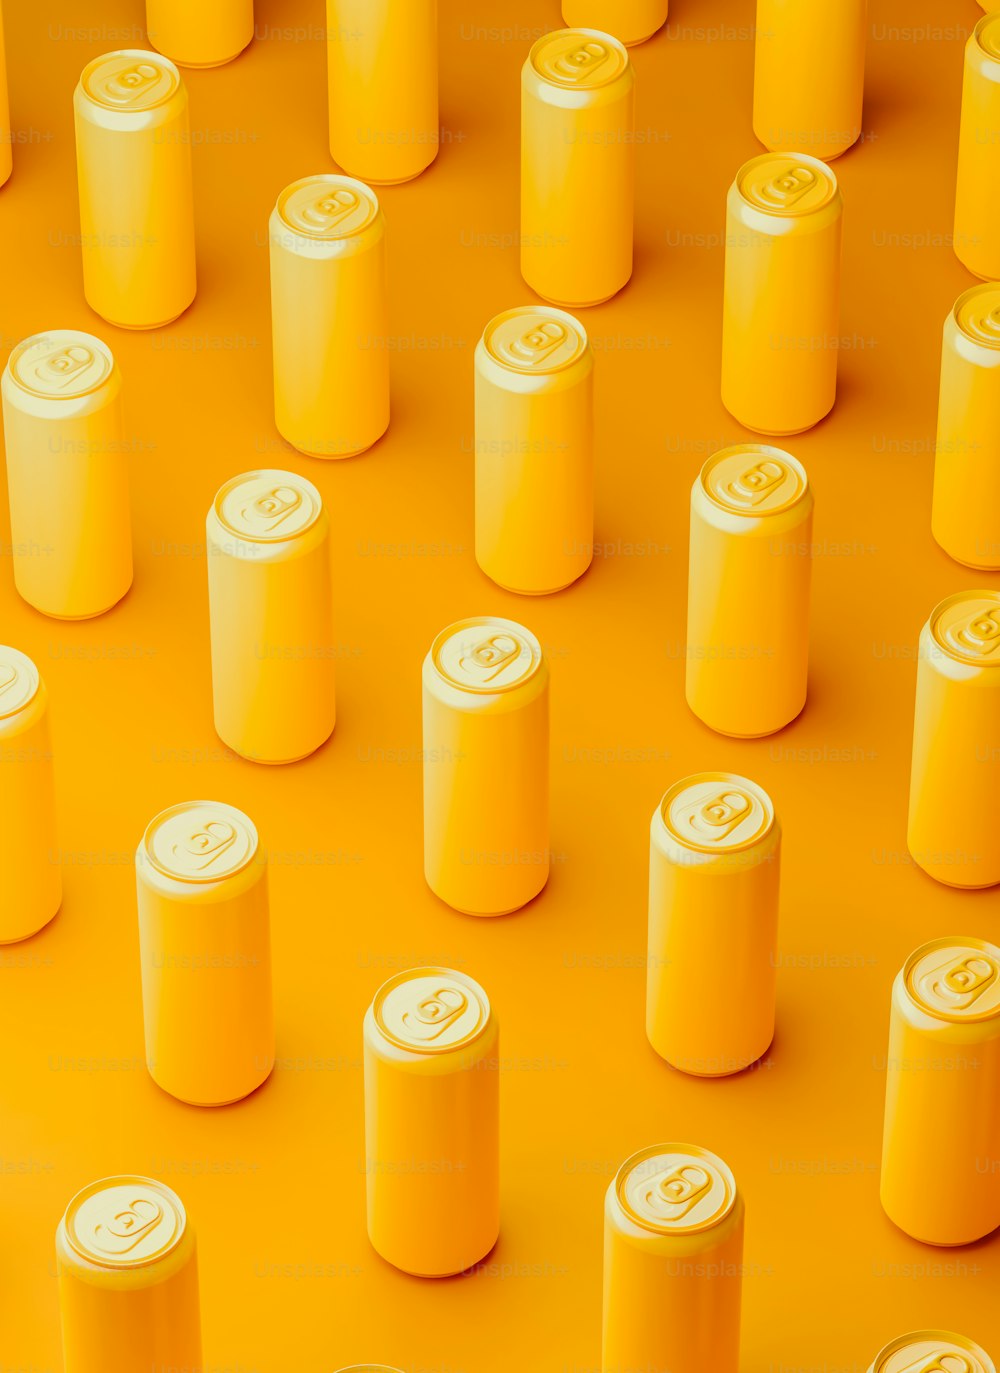 Un grupo de latas de refresco amarillas sentadas encima de una superficie amarilla